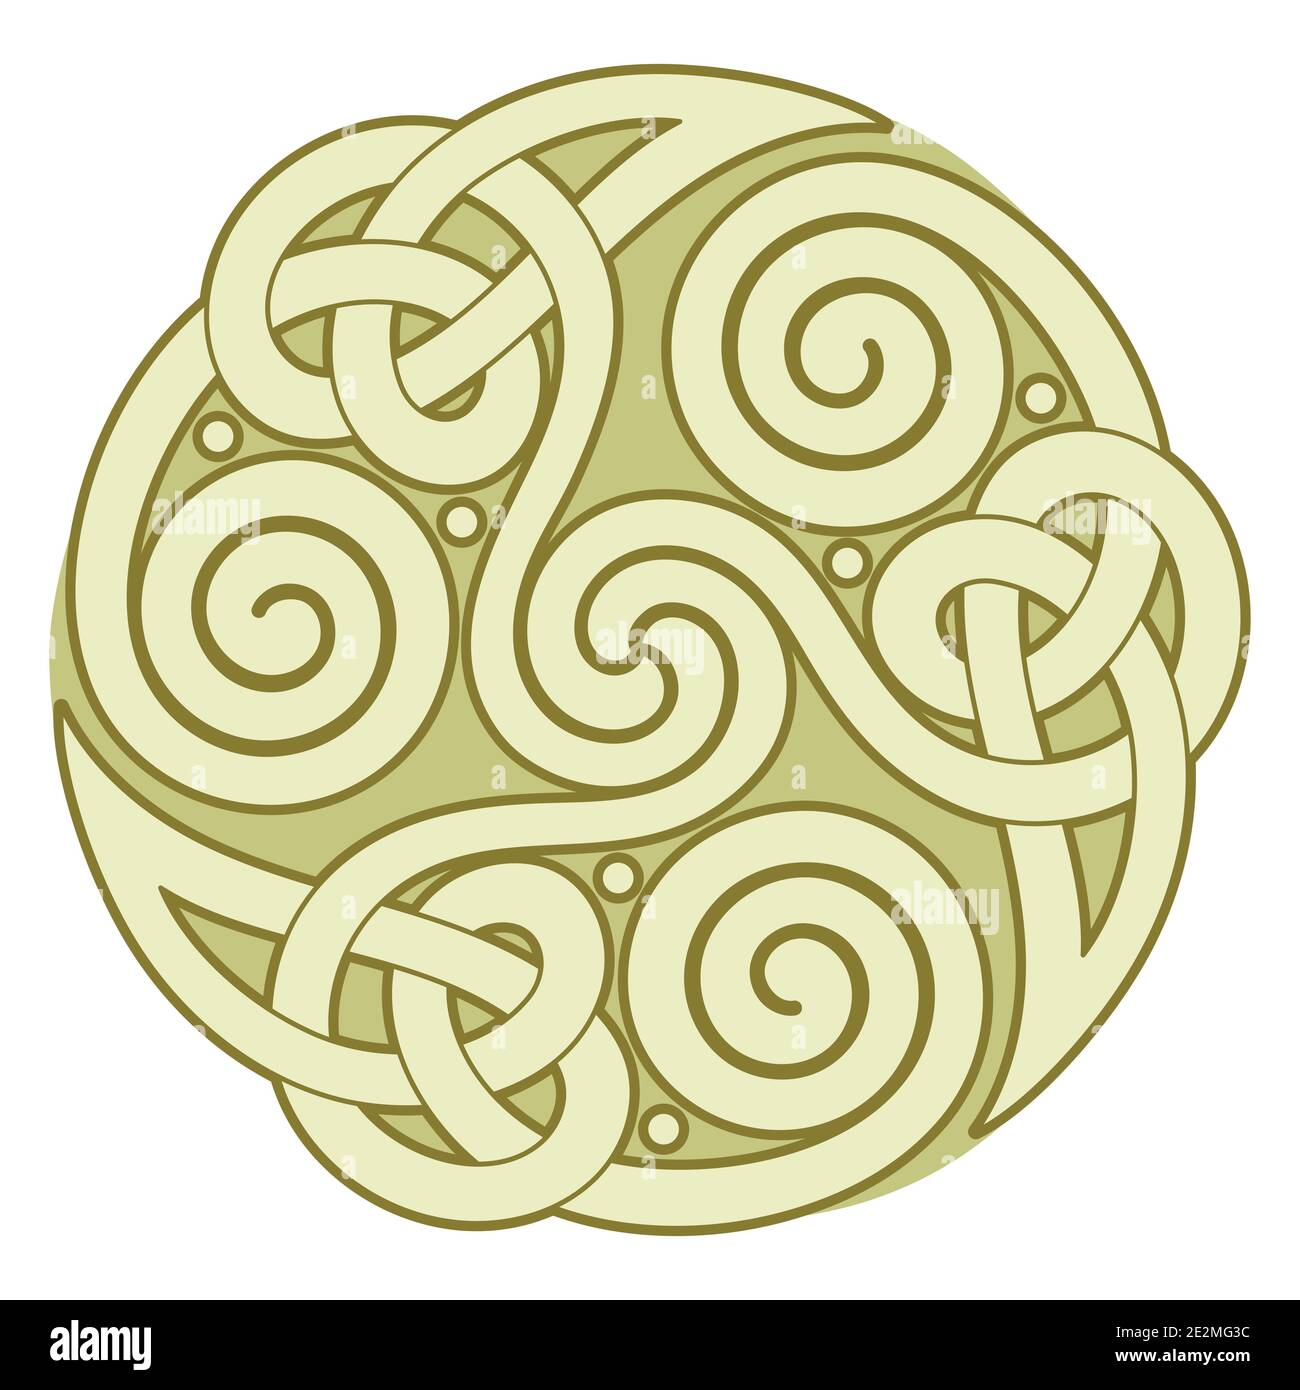 Antico Celtico Rotondo, Design Scandinavo. Nodo celtico, mandala Illustrazione Vettoriale